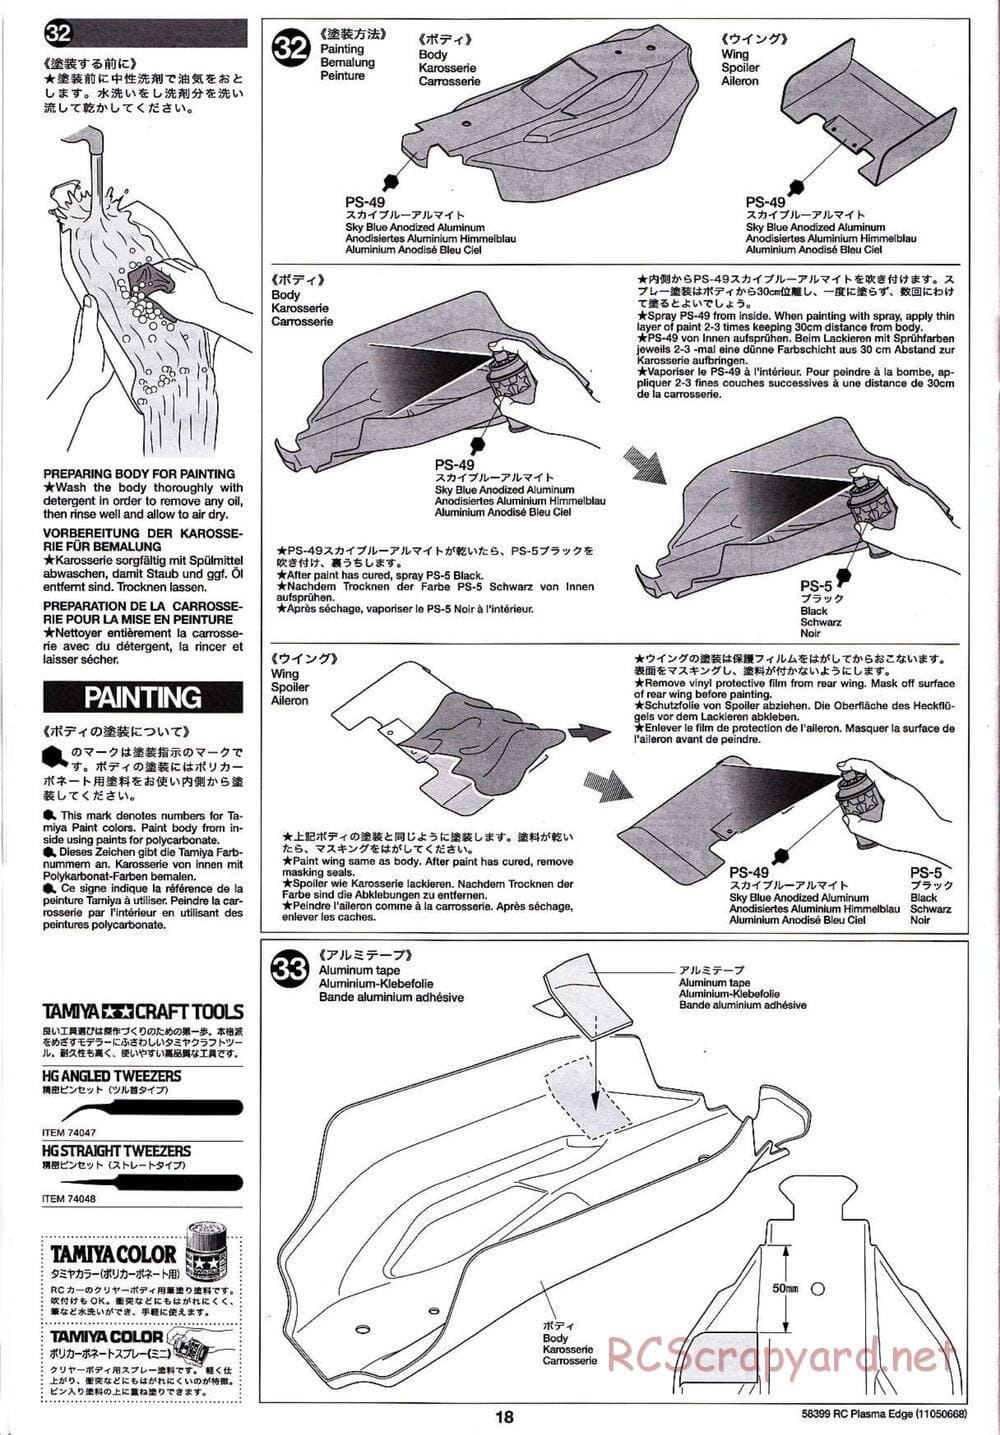 Tamiya - Plasma Edge Chassis - Manual - Page 18